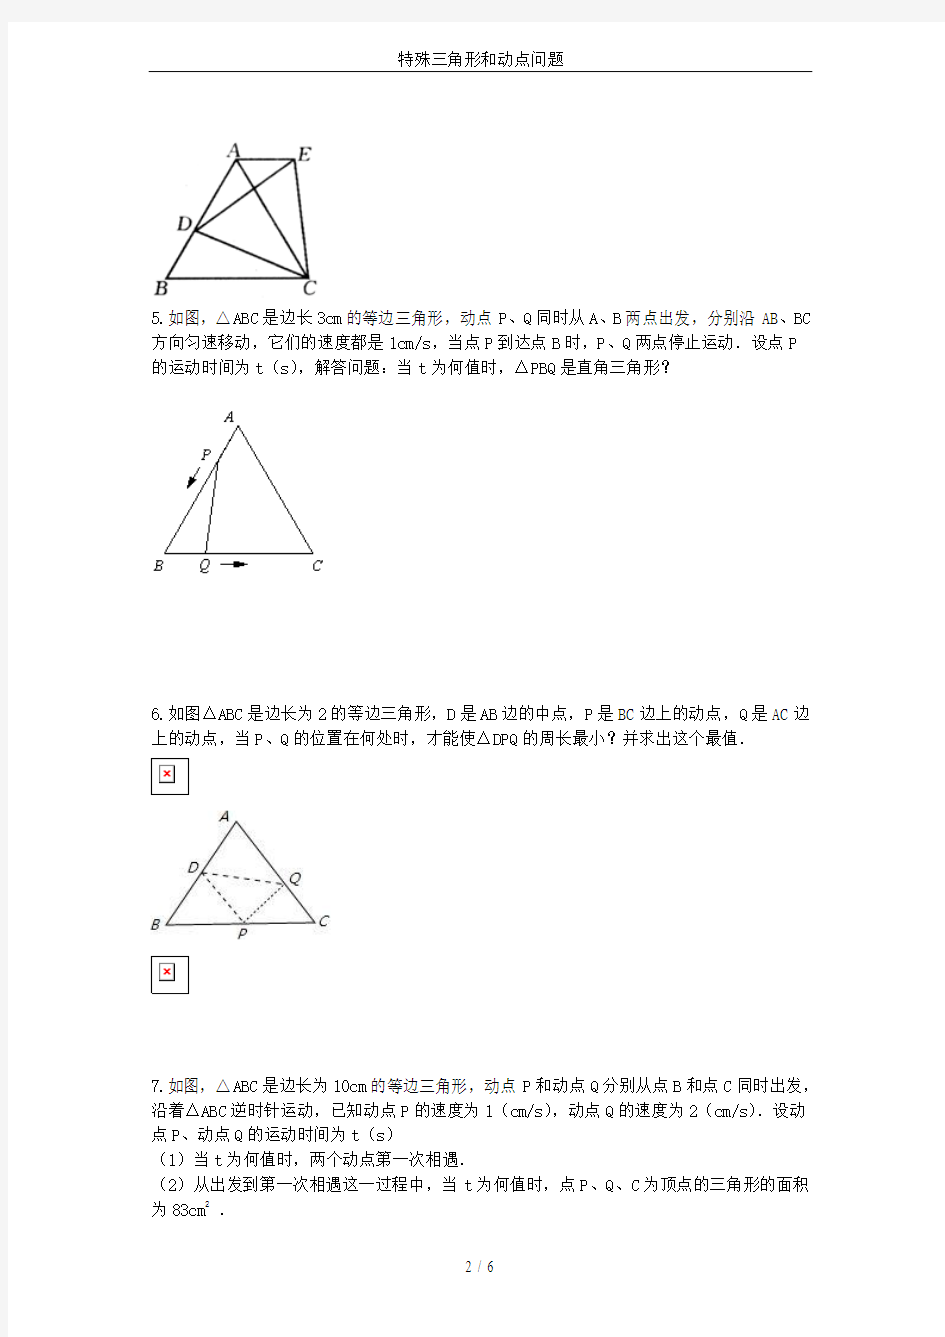 特殊三角形和动点问题